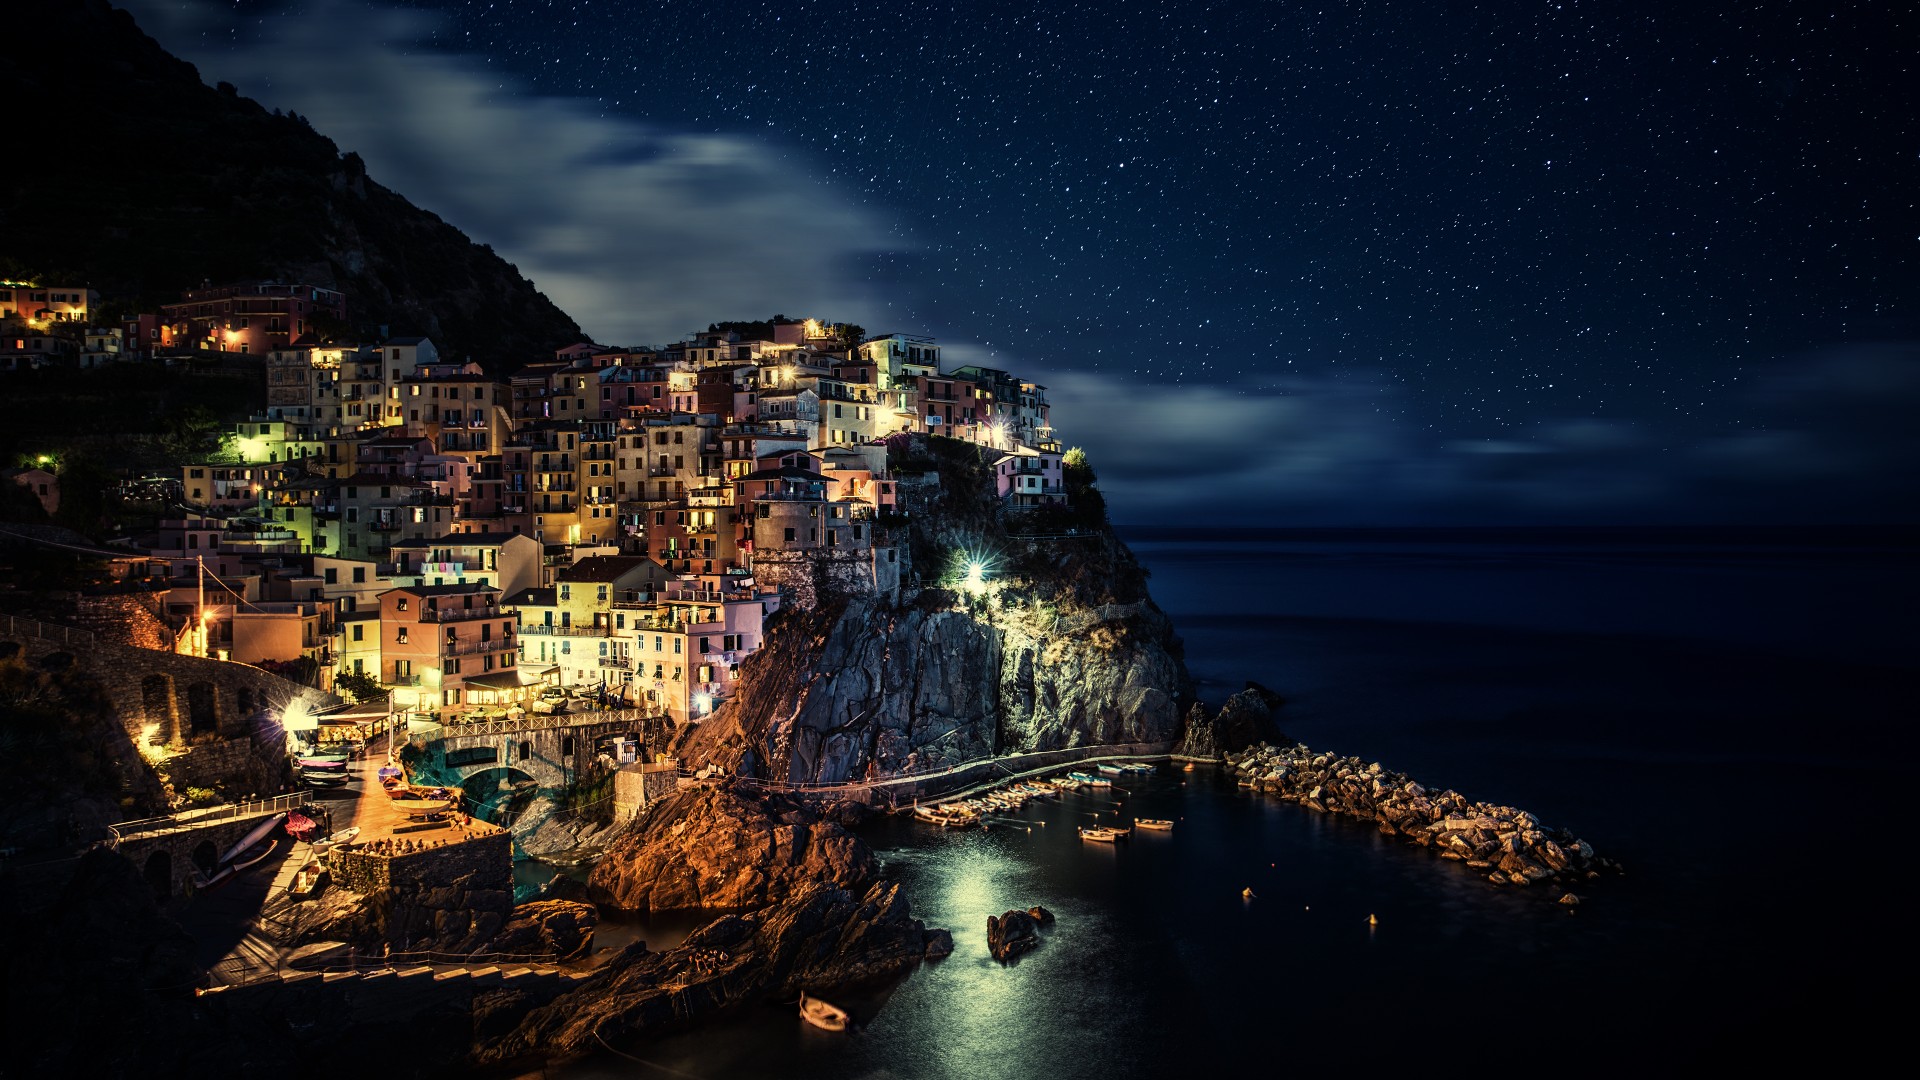 晚上的风景,天空,星星,意大利五渔村风光电脑壁纸